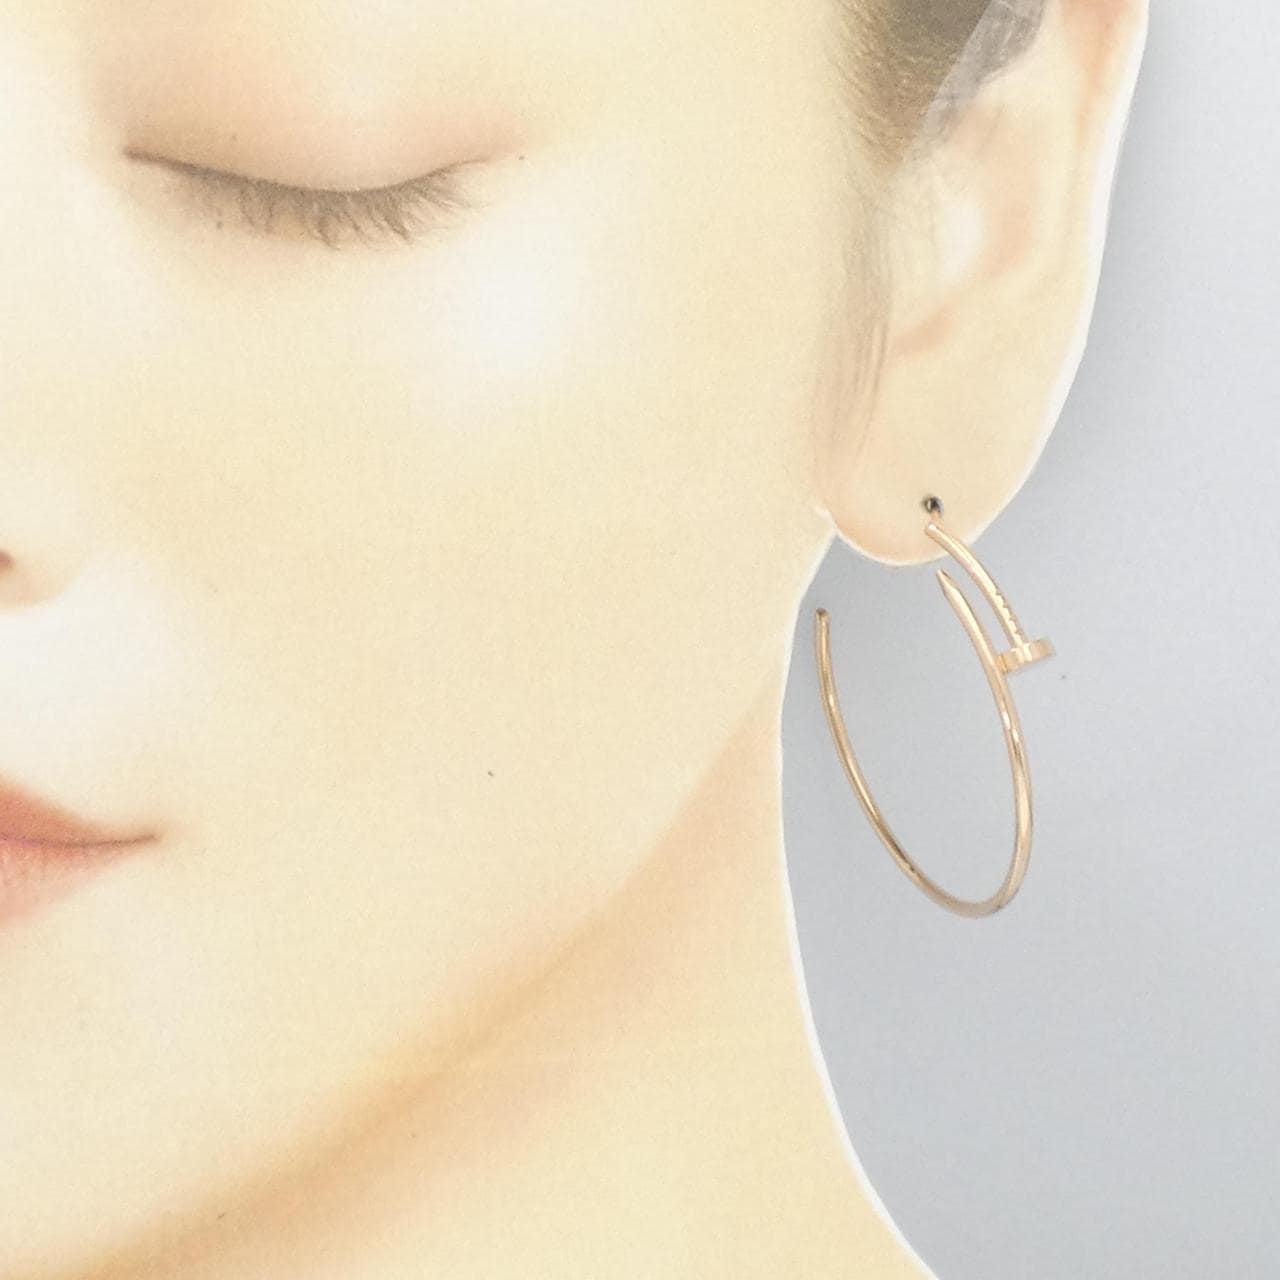 Cartier Juste Un Clou earrings